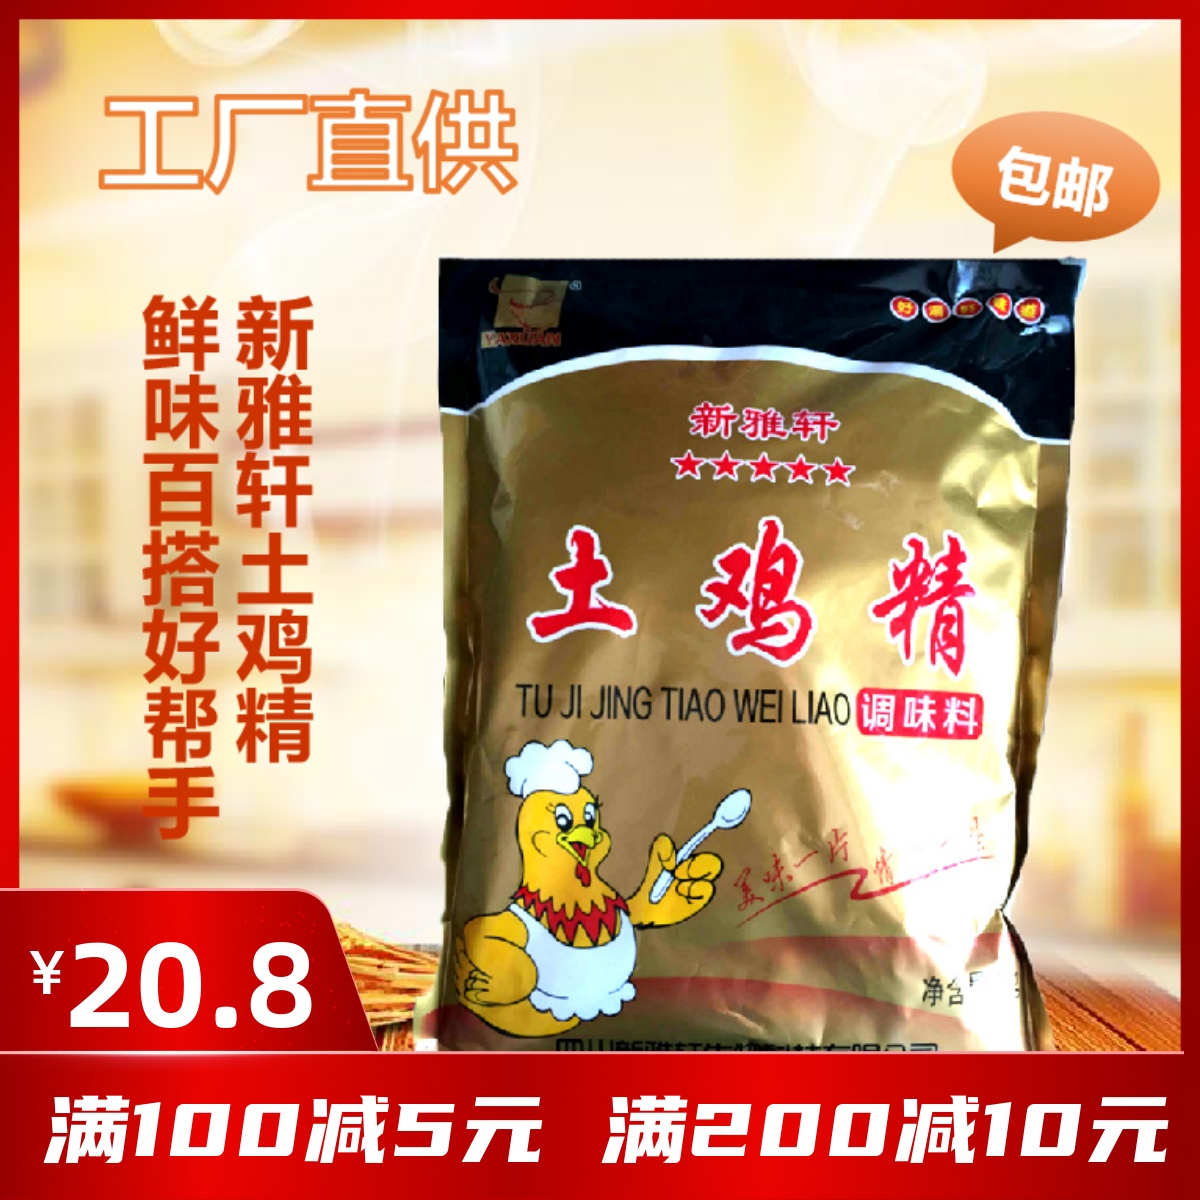 正品四川新雅轩土鸡精1kg炒菜煲汤火锅米线厨房调味料